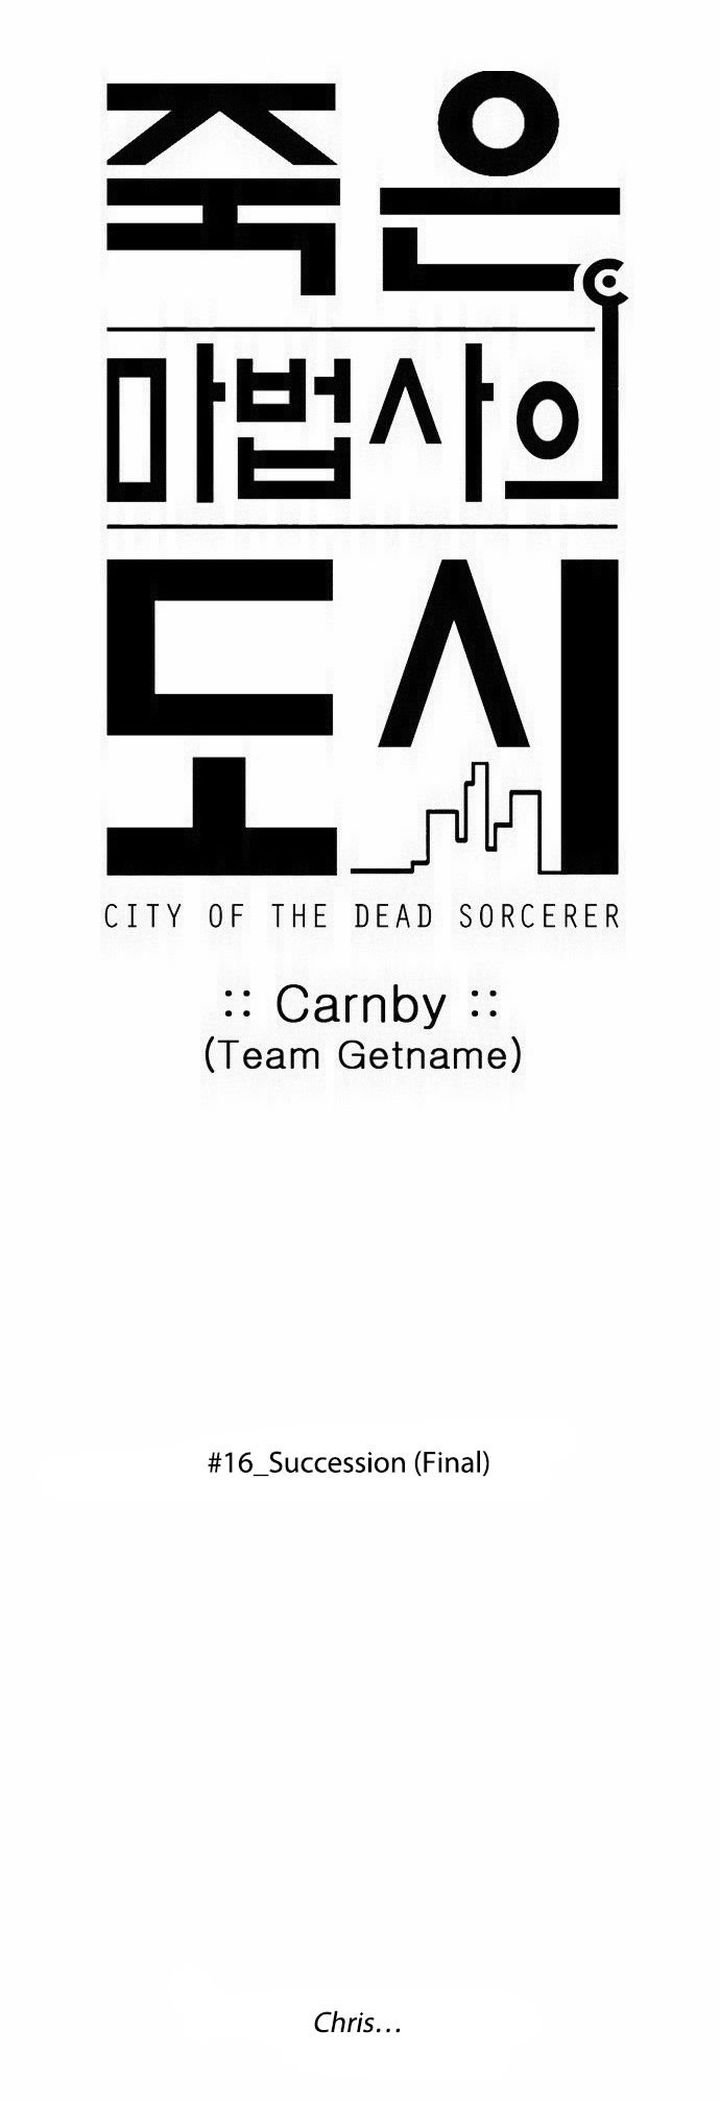 City Of Dead Sorcerer 201 1